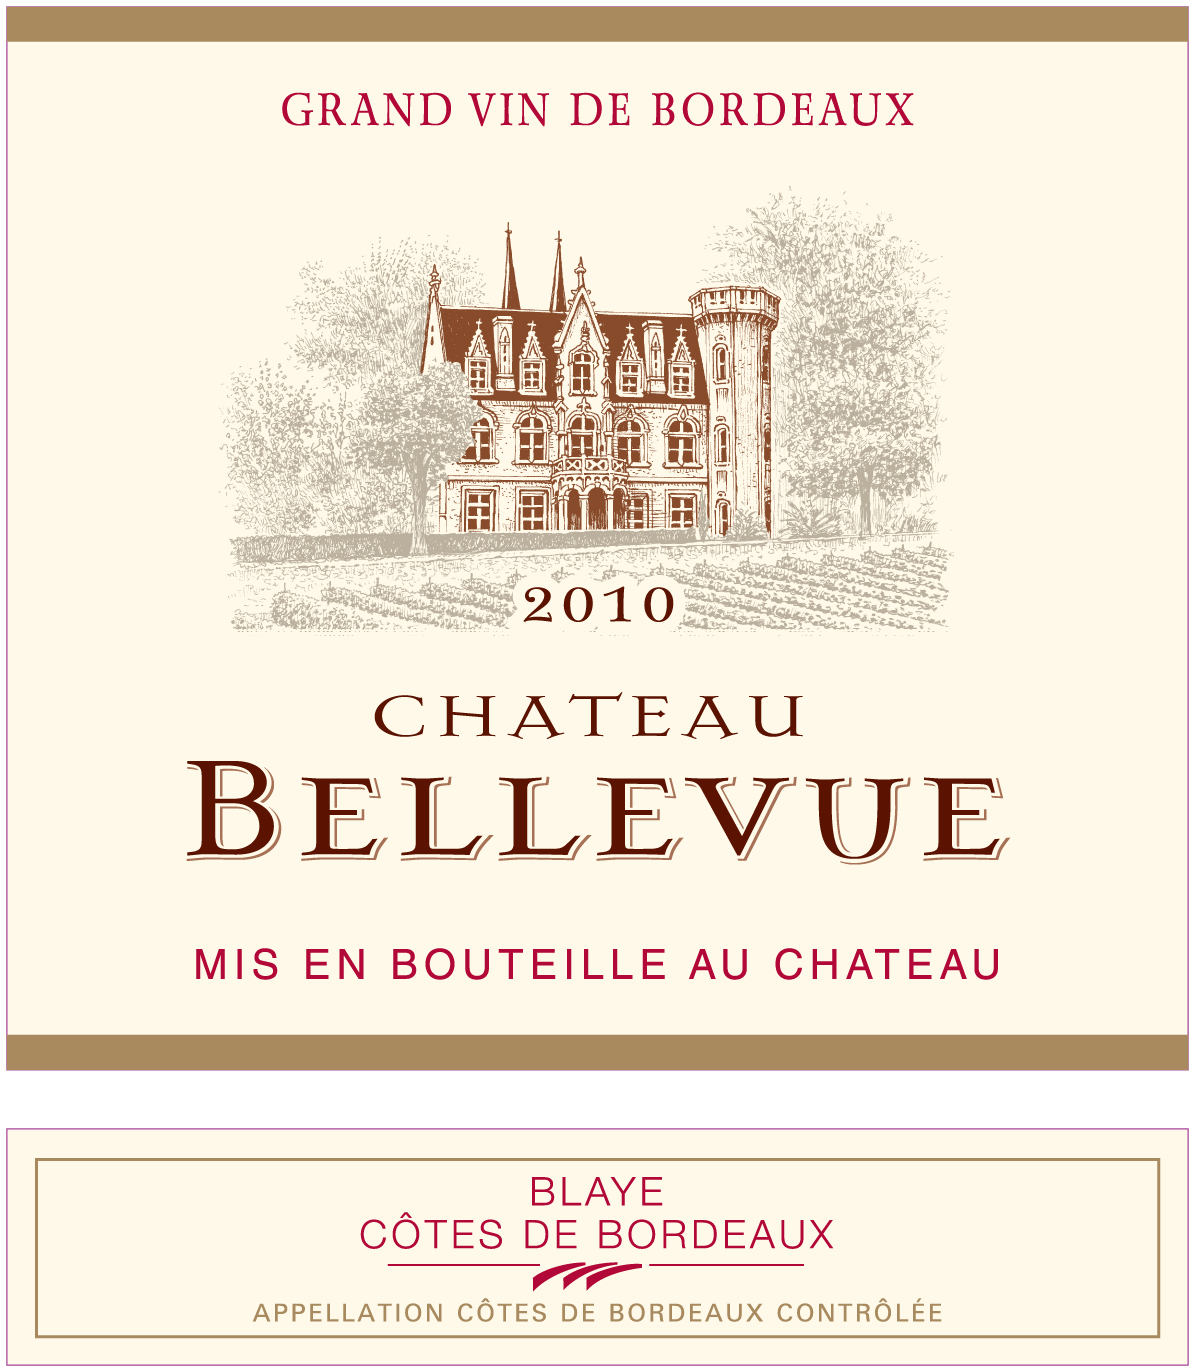 샤토 벨뷔 Château Bellevue AOC 블라이 - 코트 드 보르도 Blaye - Côtes de Bordeaux 레드 Red 2010